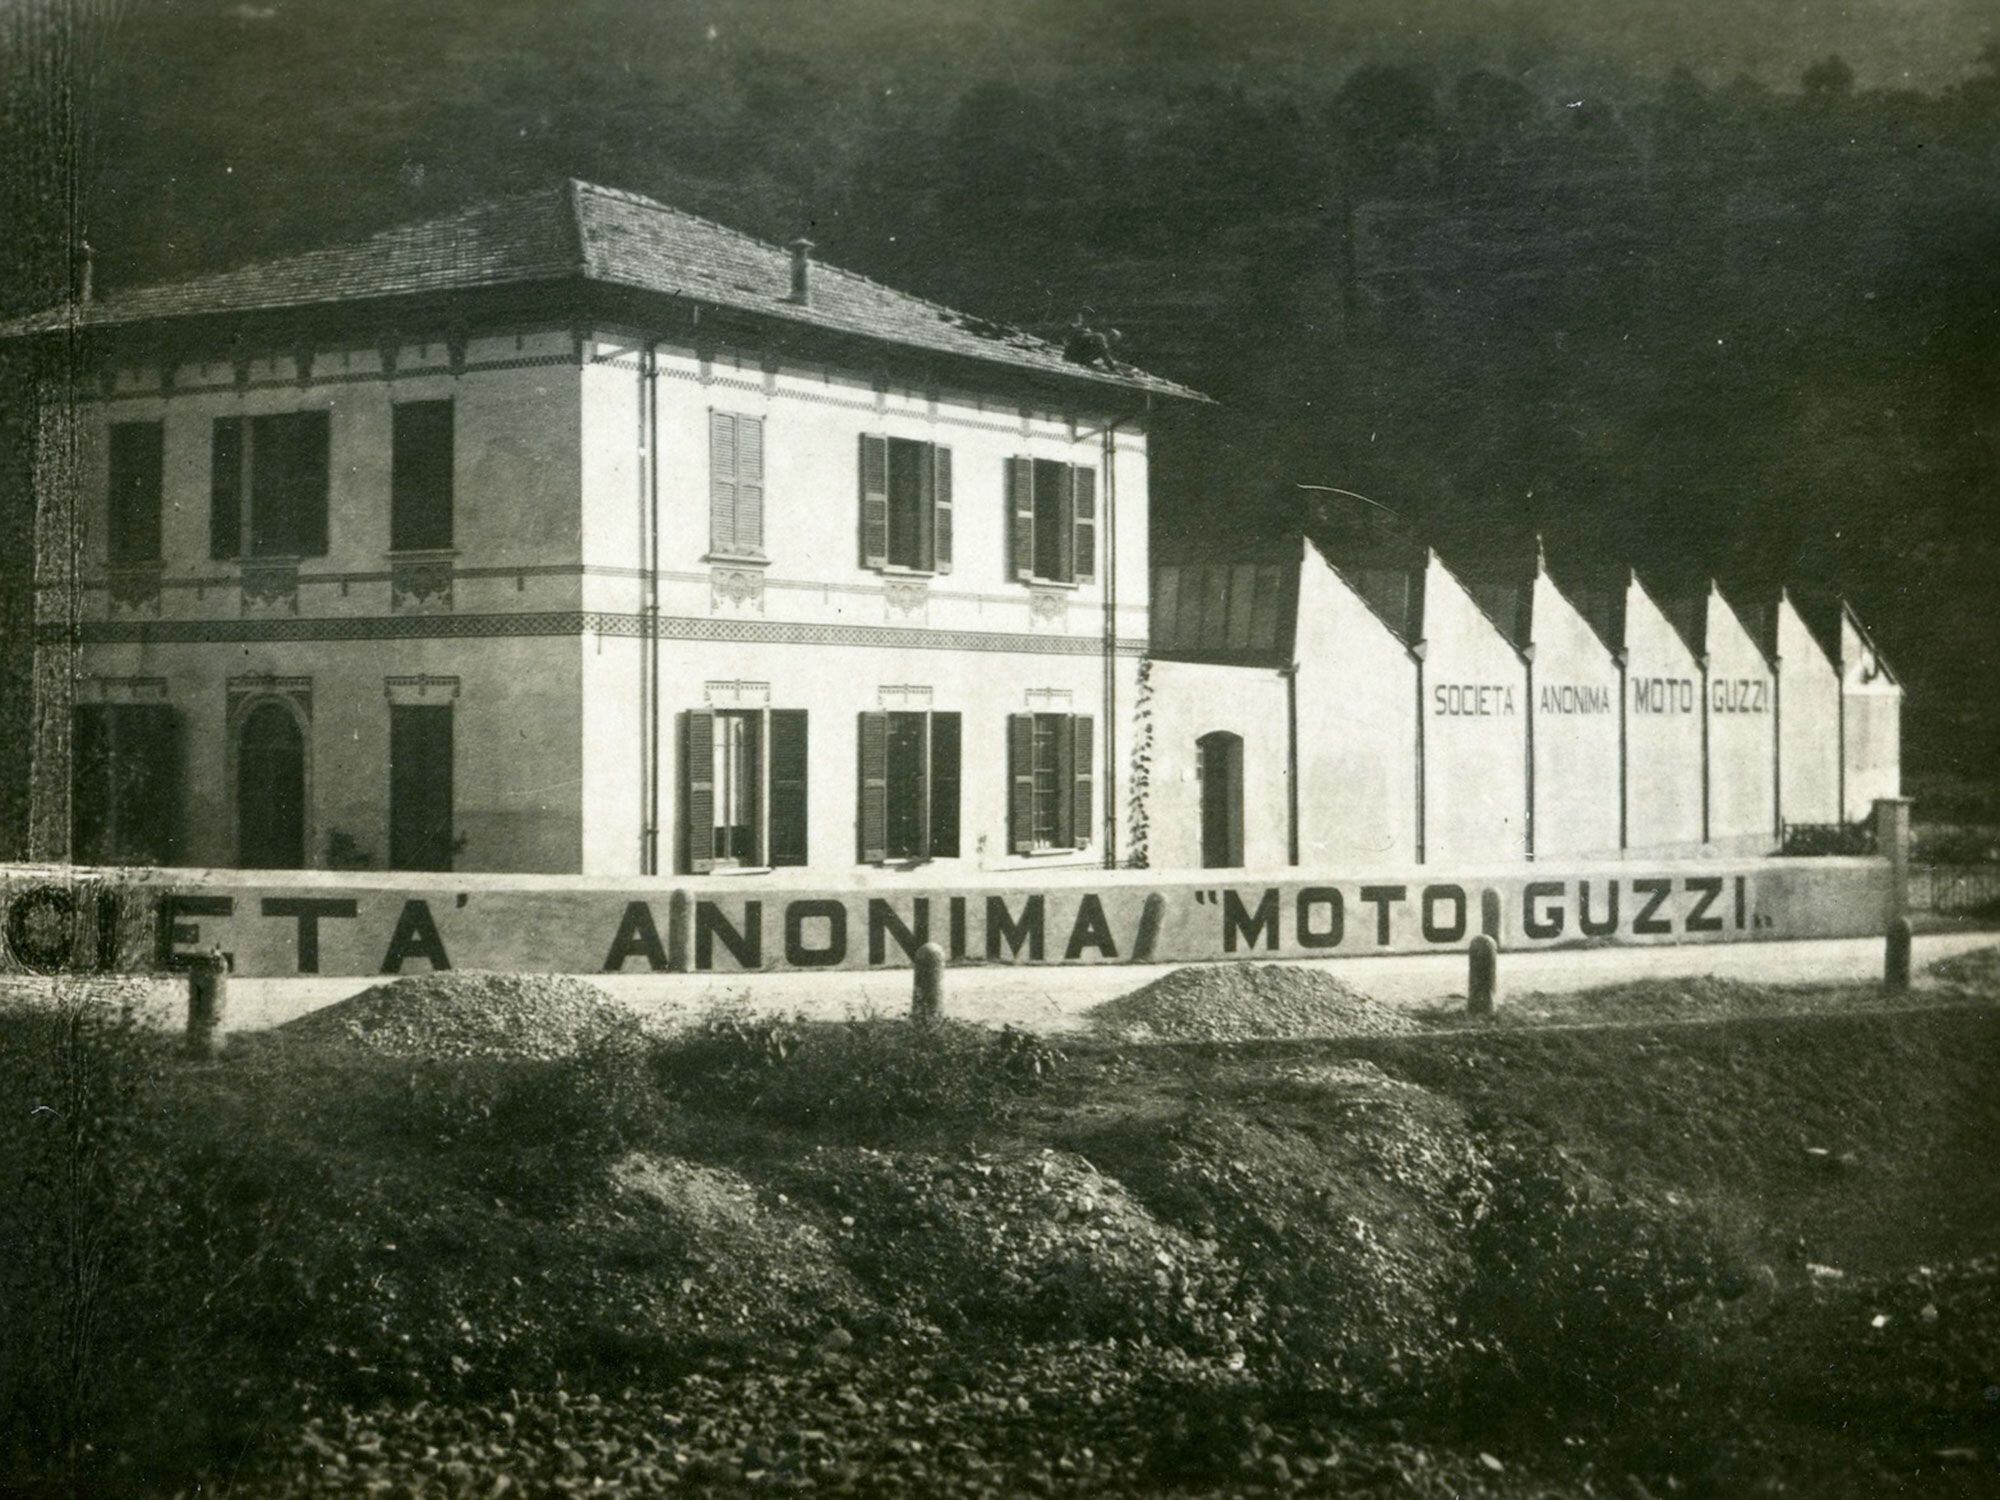 The Moto Guzzi factory in 1921 in Mandello del Lario.